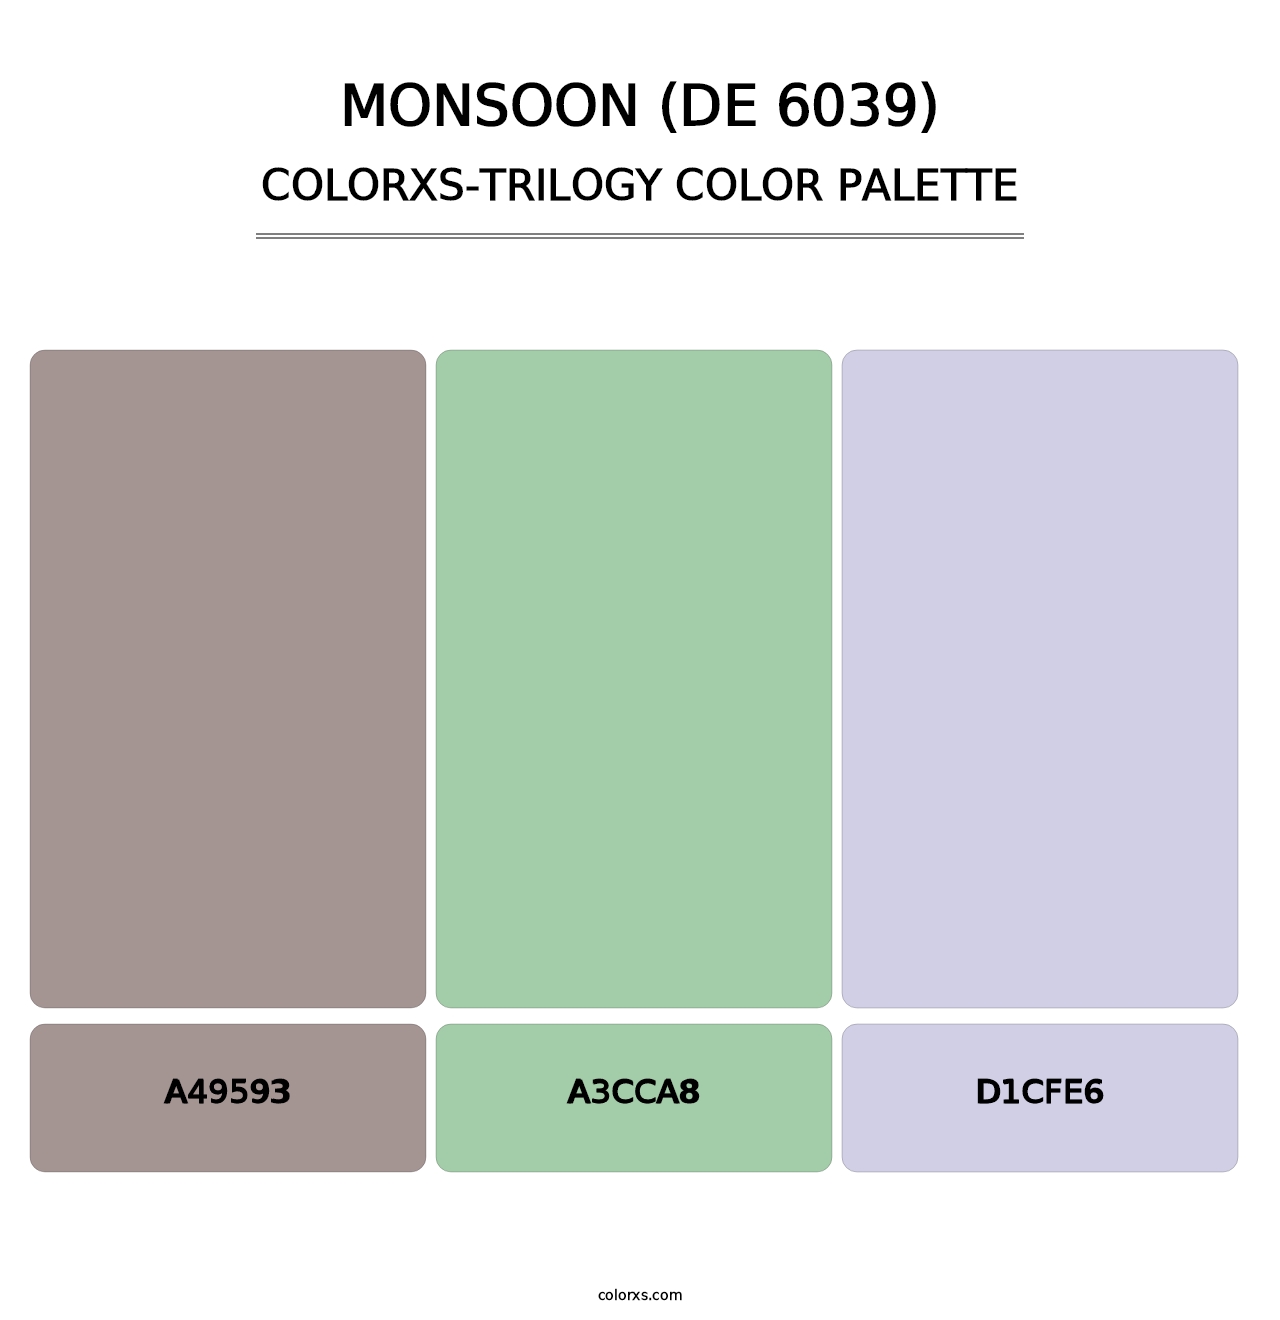 Monsoon (DE 6039) - Colorxs Trilogy Palette